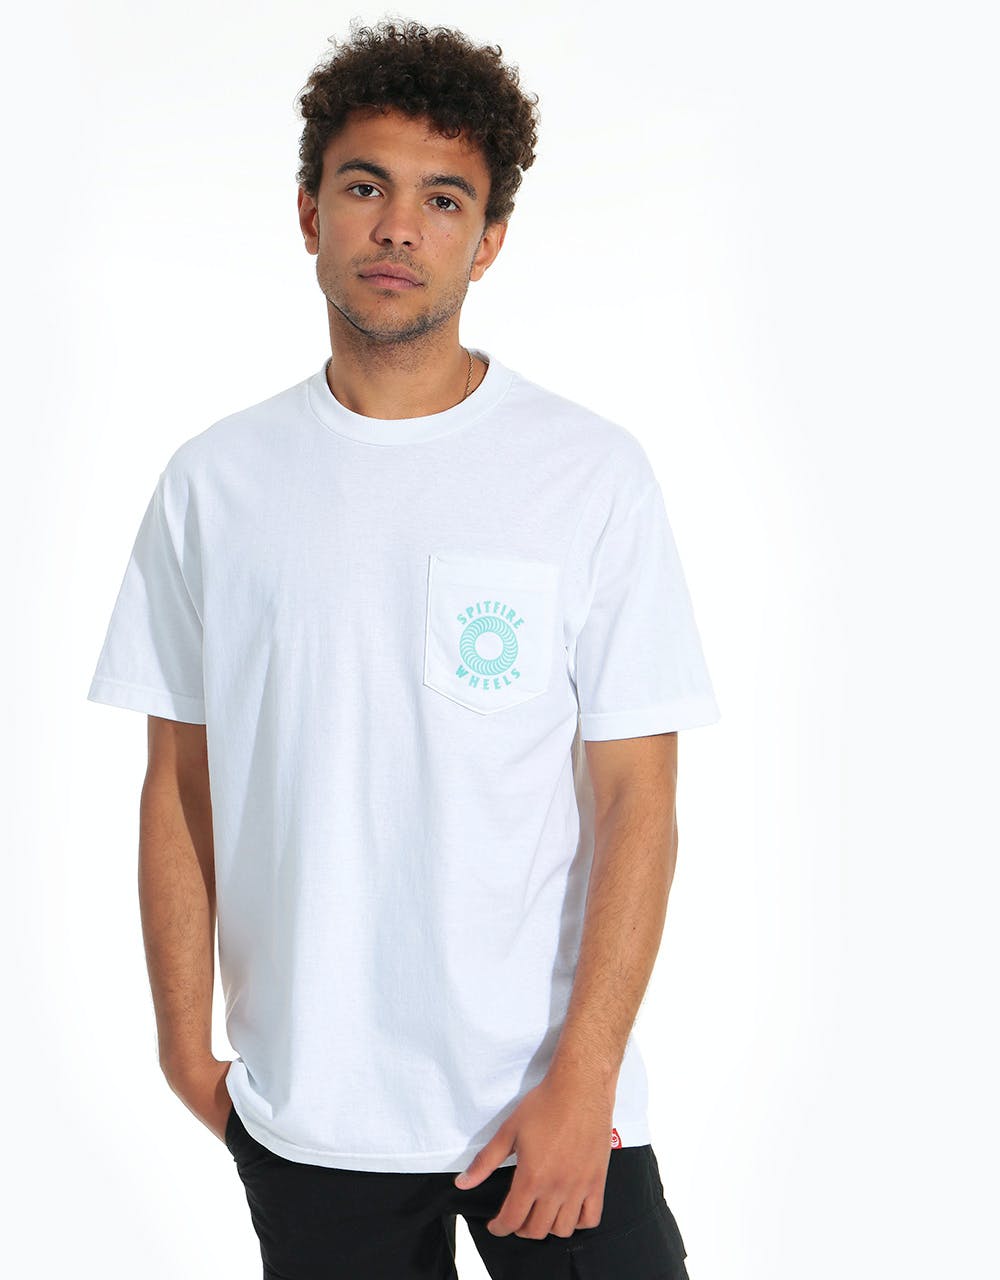 Spitfire Hollow Classic Pocket T-Shirt - White/Aqua